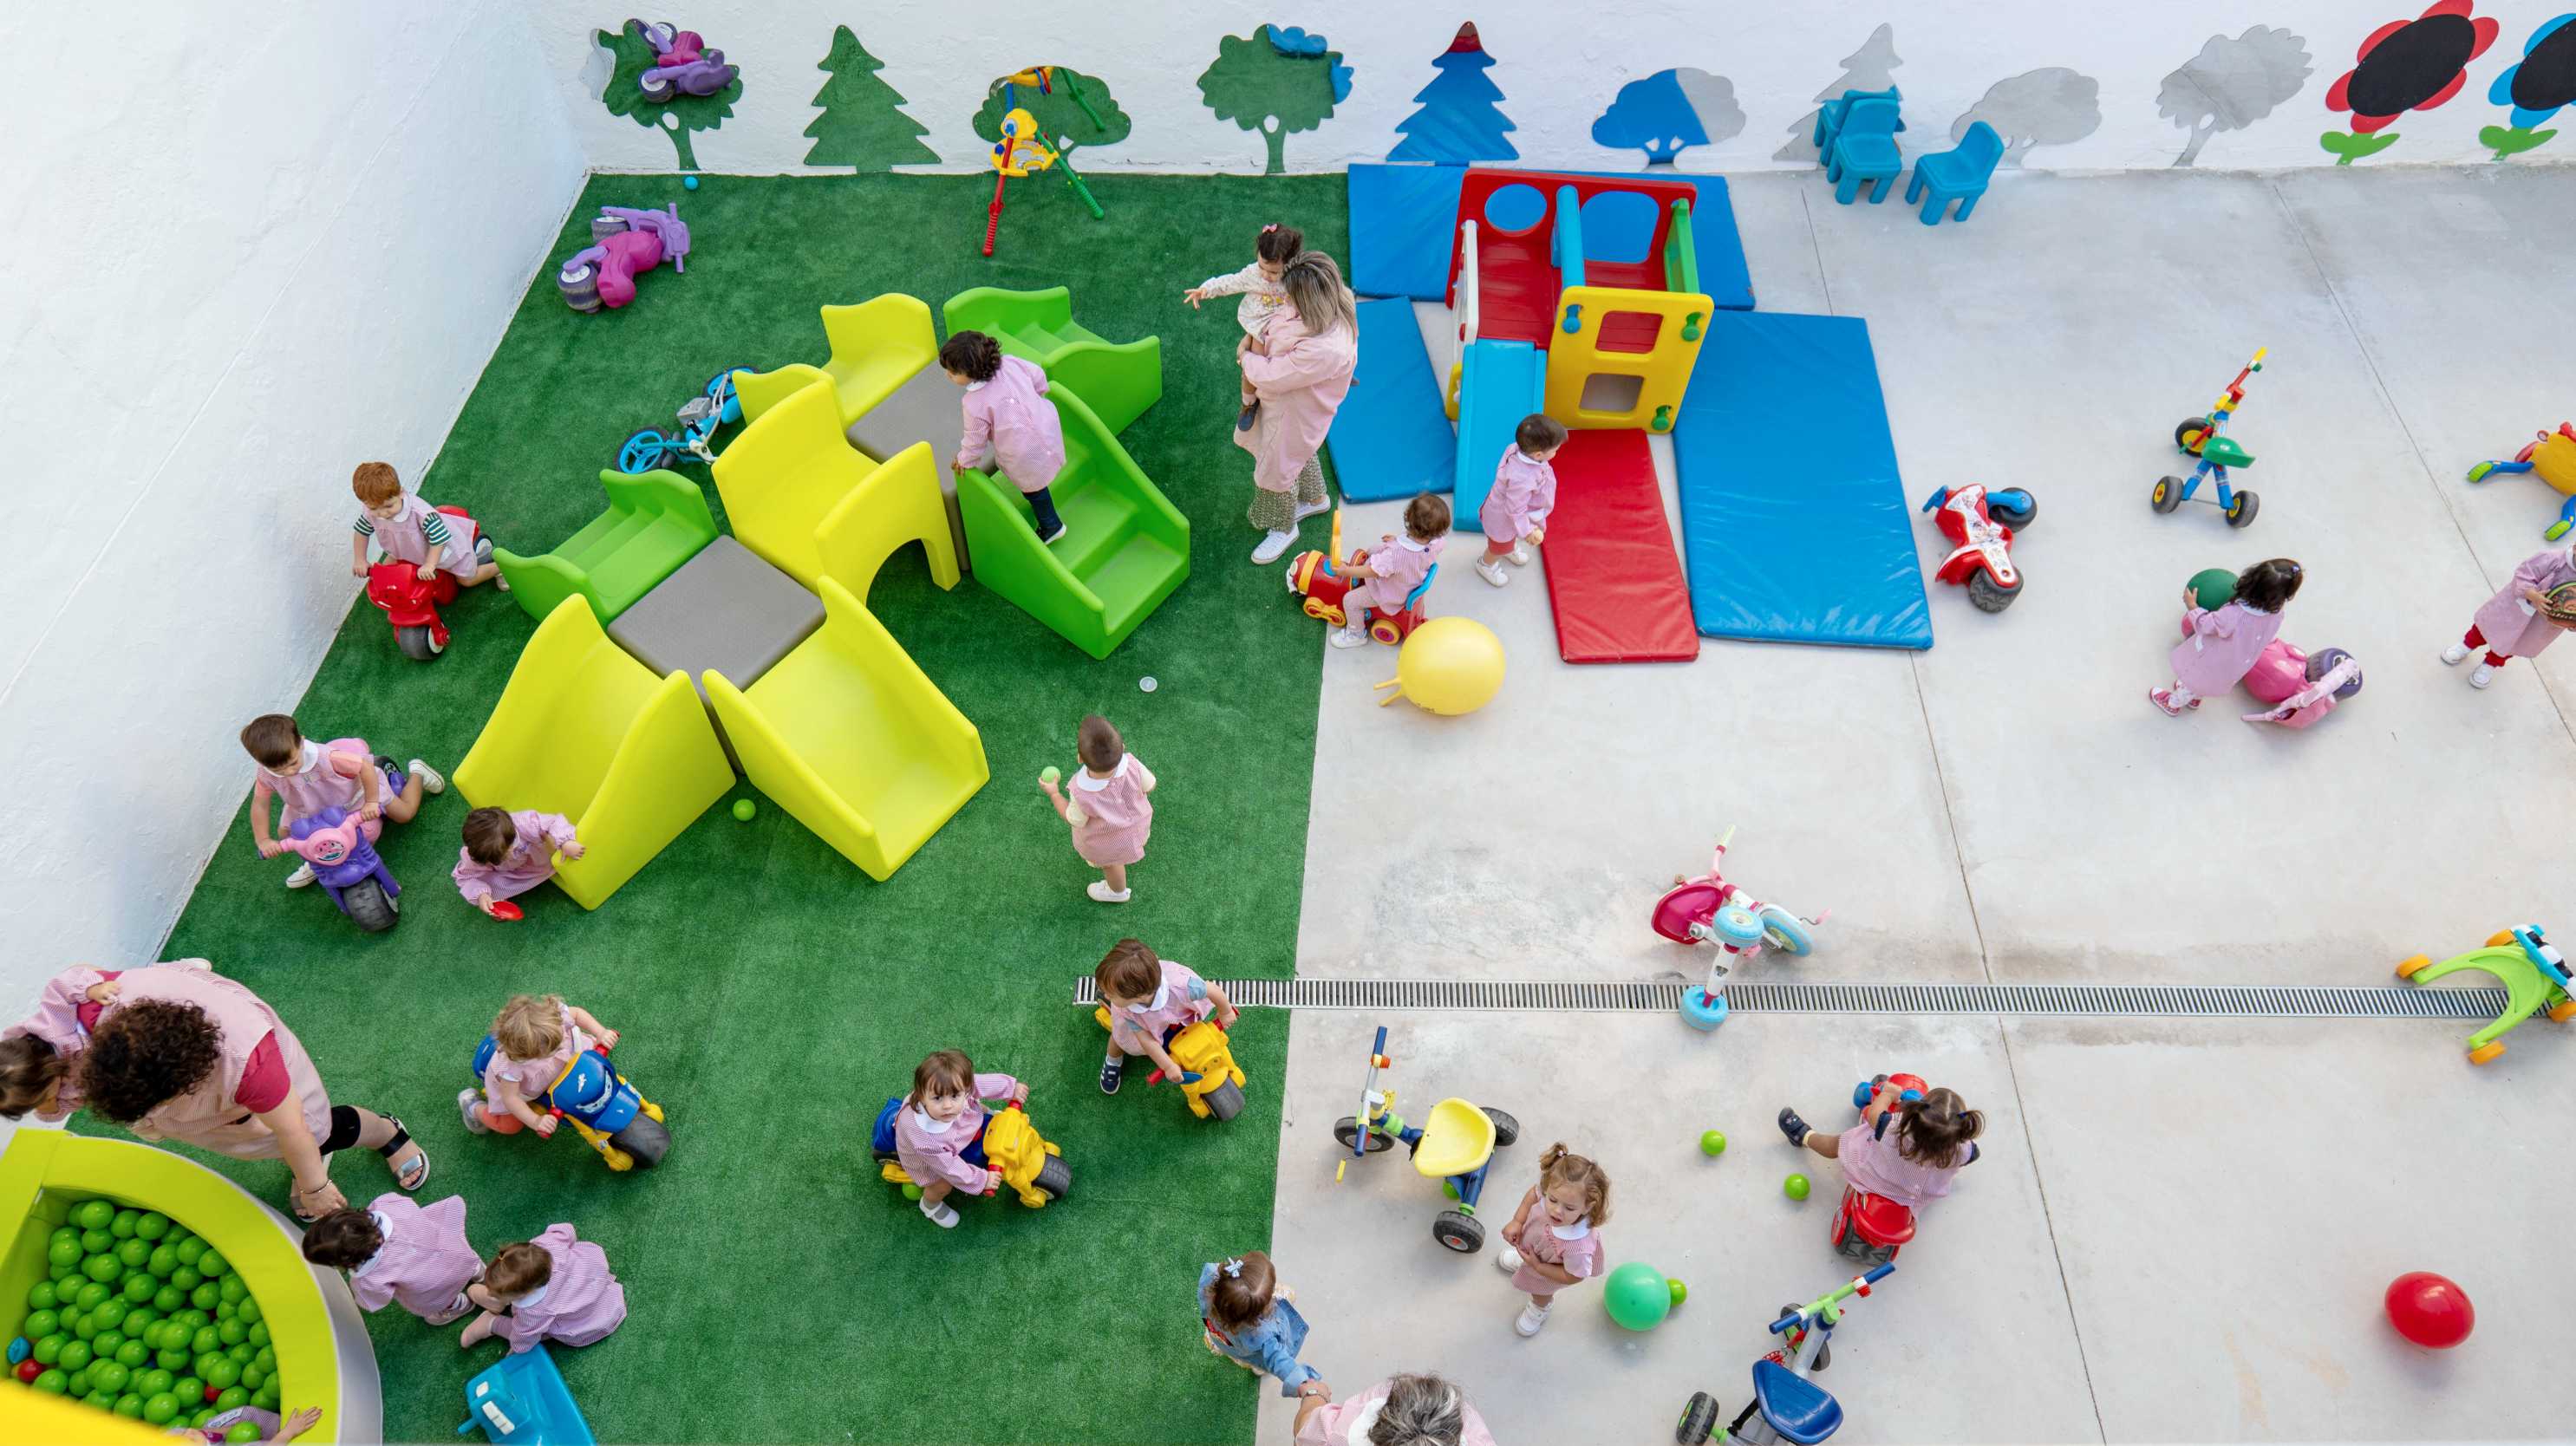 Calzada de Calatrava reabre las puertas de la nueva Escuela Infantil “Solete” con aula de 0 a 1 años dy ampliación de horarios